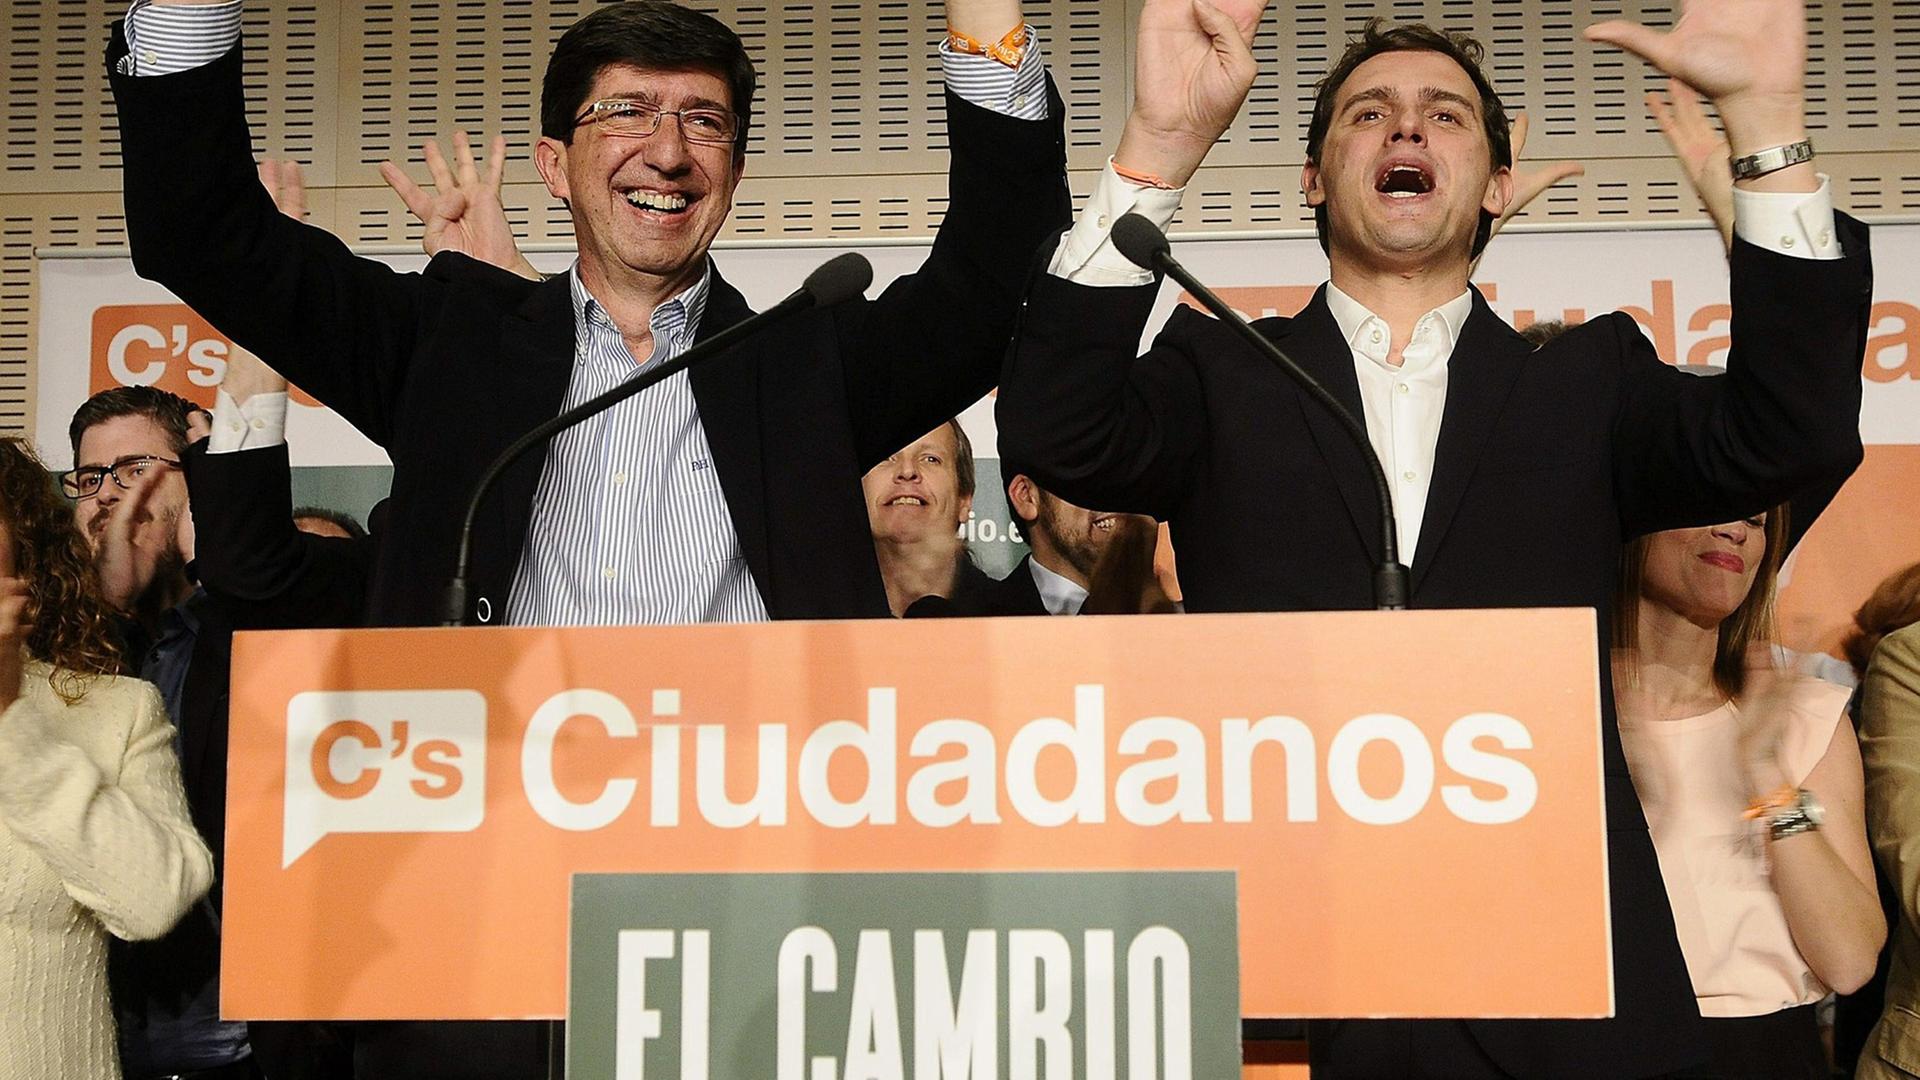 Der Vorsitzende der Partei Ciudadanos, Albert Rivera (rechts) und der Kandidat für die Regionalwahlen in Andalusien Juan Marin (links)